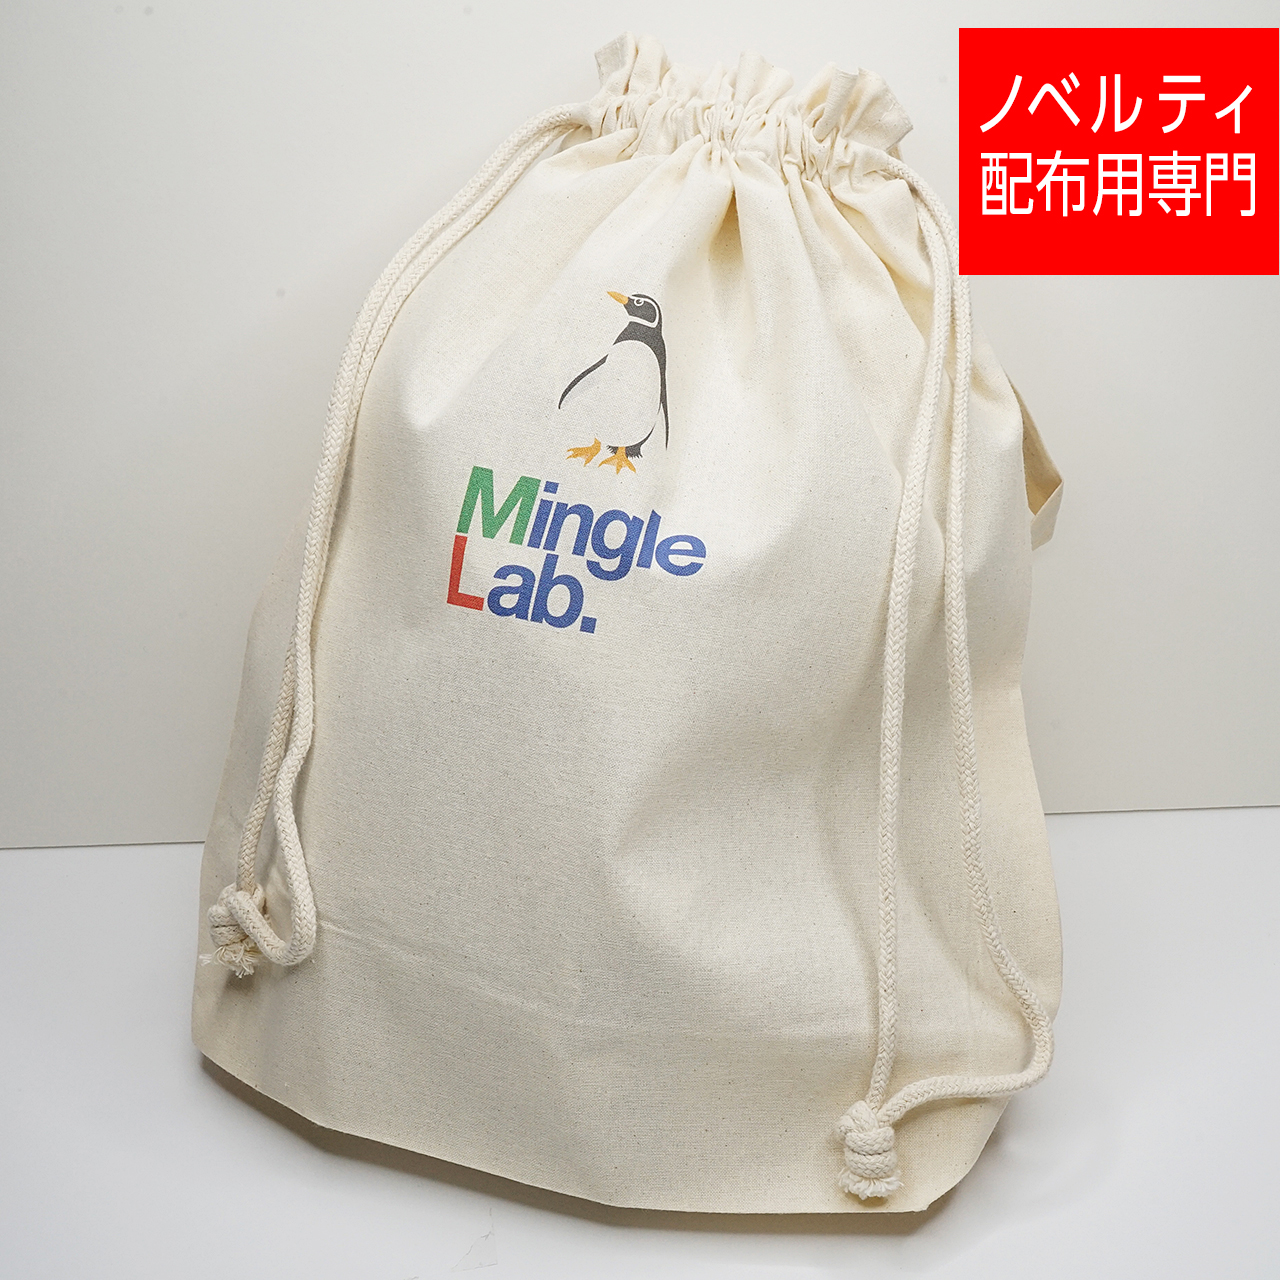 Mingle Lab. | ショッピングバッグや展示会等のイベントのノベルティなどの配布用に。【30枚1セット】コットンエコ巾着 (L)片面フルカラープリント